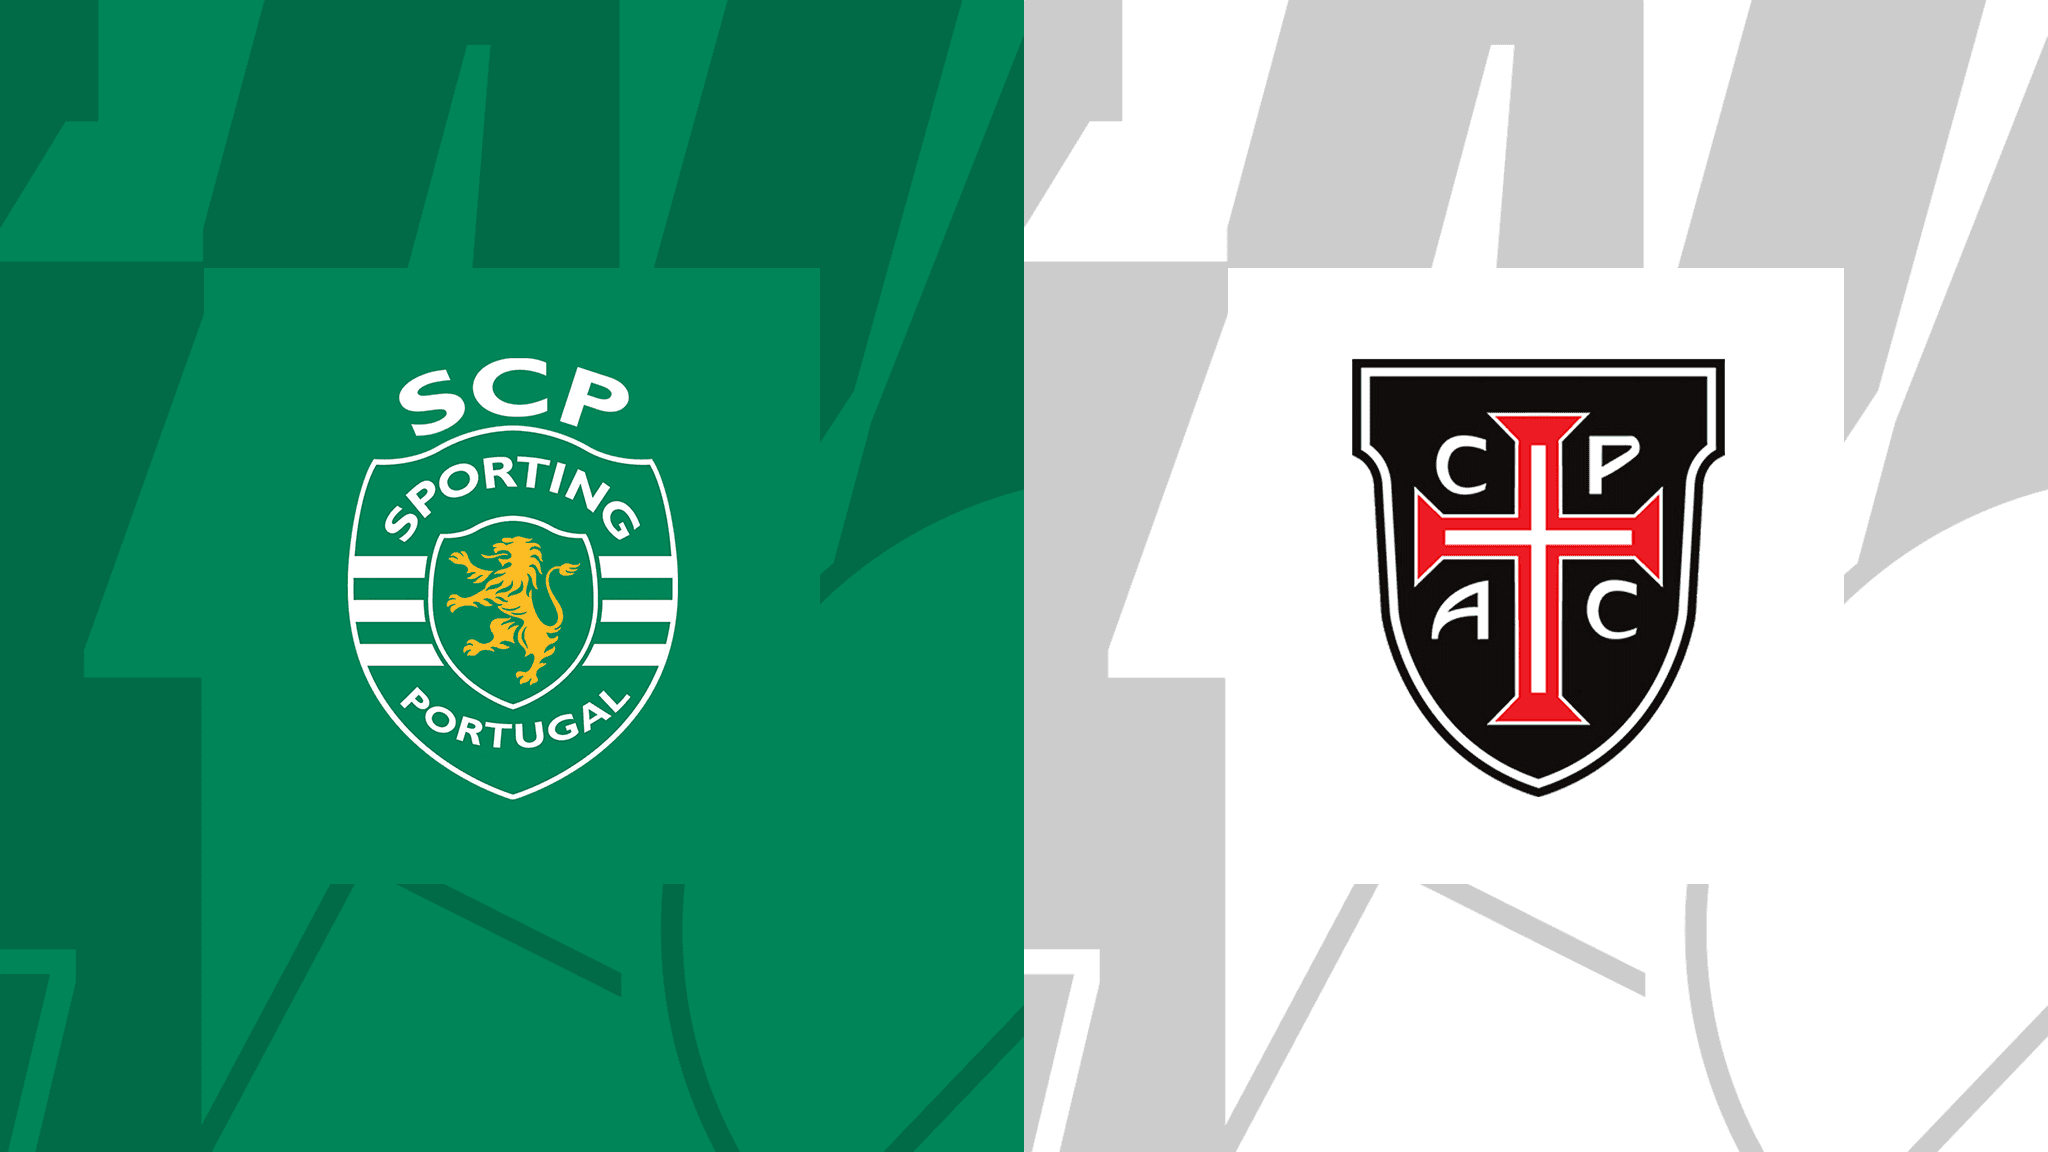  مشاهدة مباراة سبورتينج لشبونة و كاسا بيا بث مباشر 22/10/2022 Sporting CP vs Casa Pia